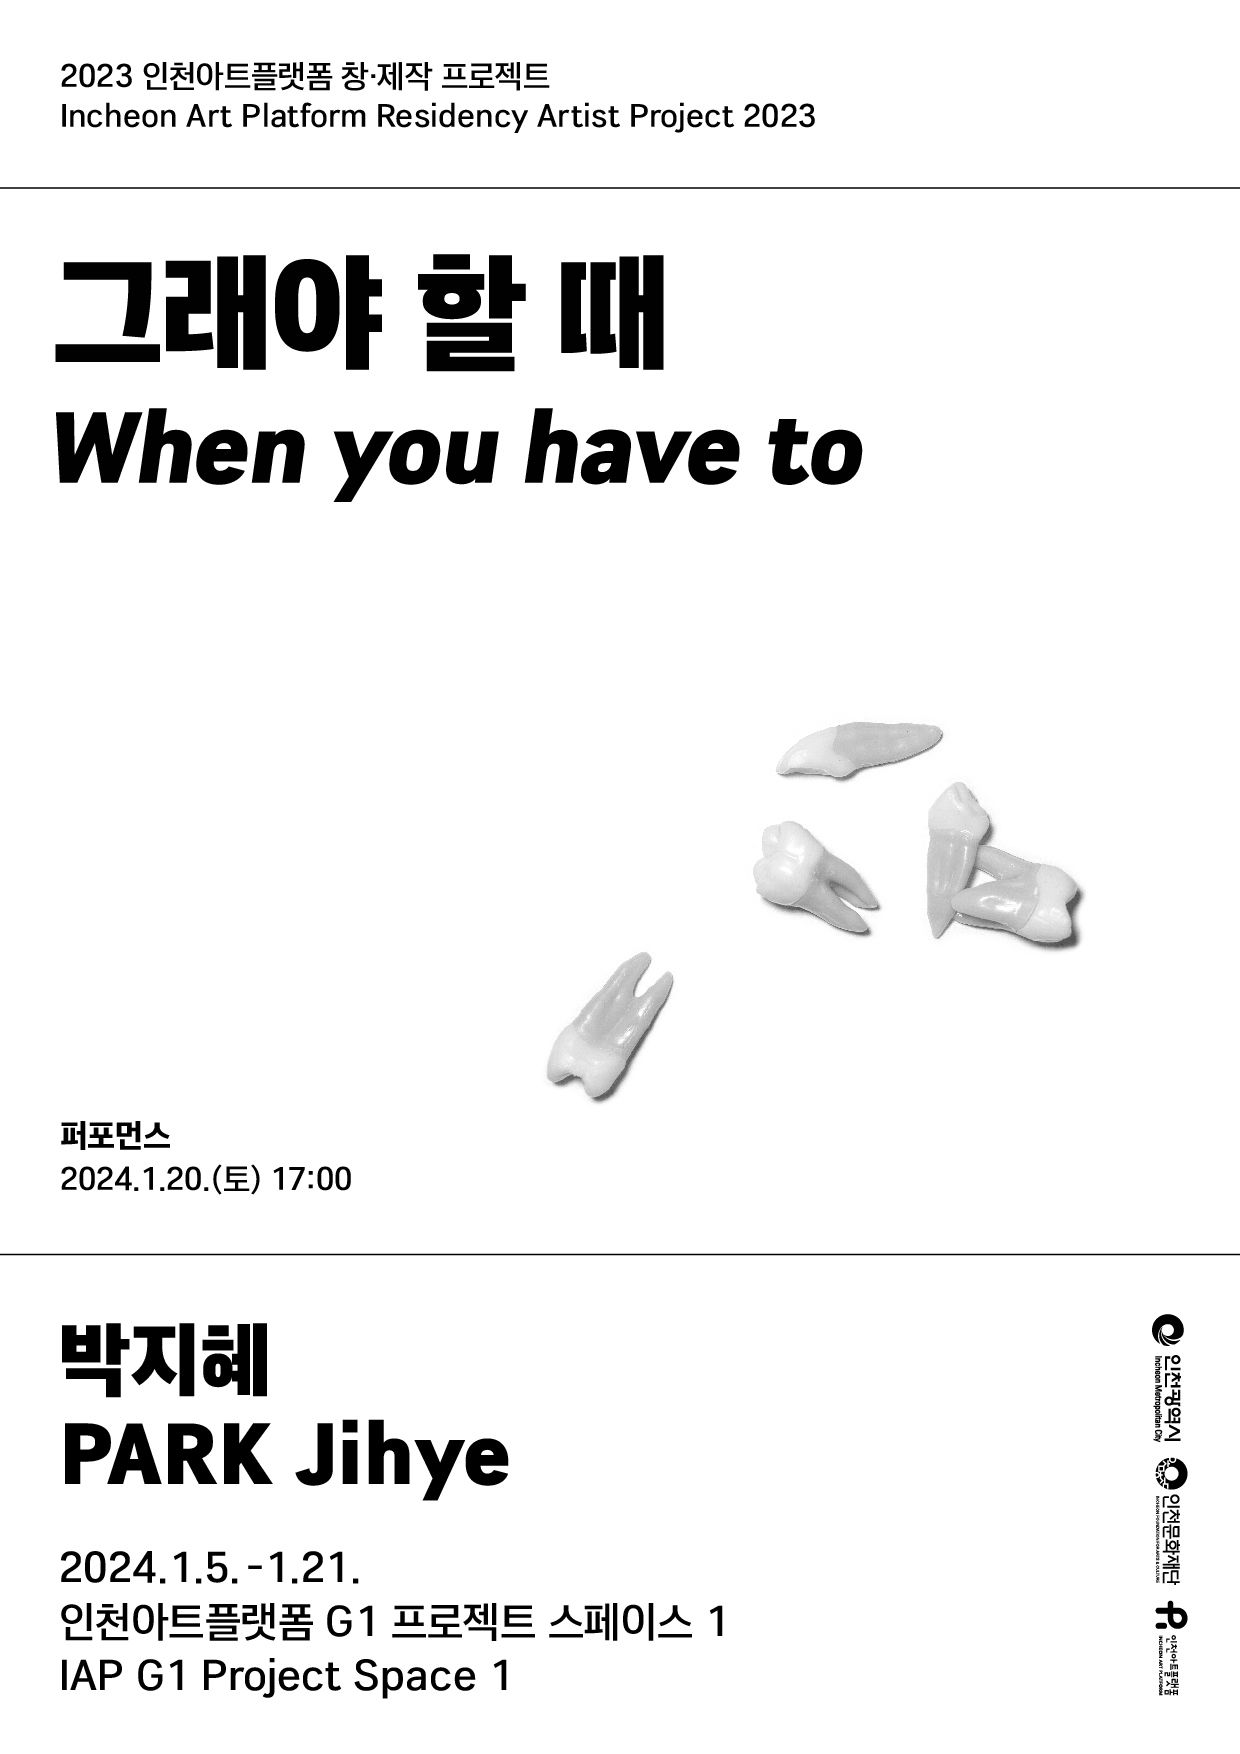 2023 인천아트플랫폼 창제작 프로젝트 13. 박지혜 <그래야 할 때> 포스터